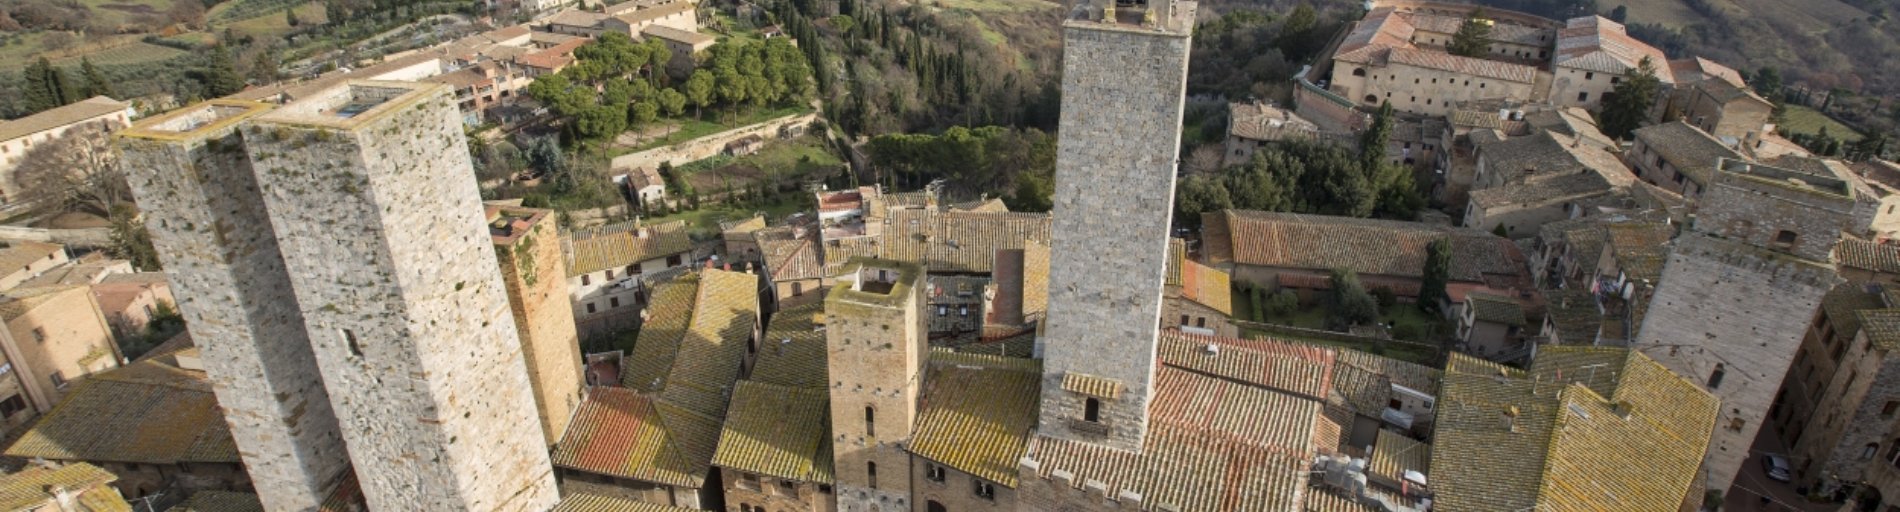 San Gimignano visto desde lo alto